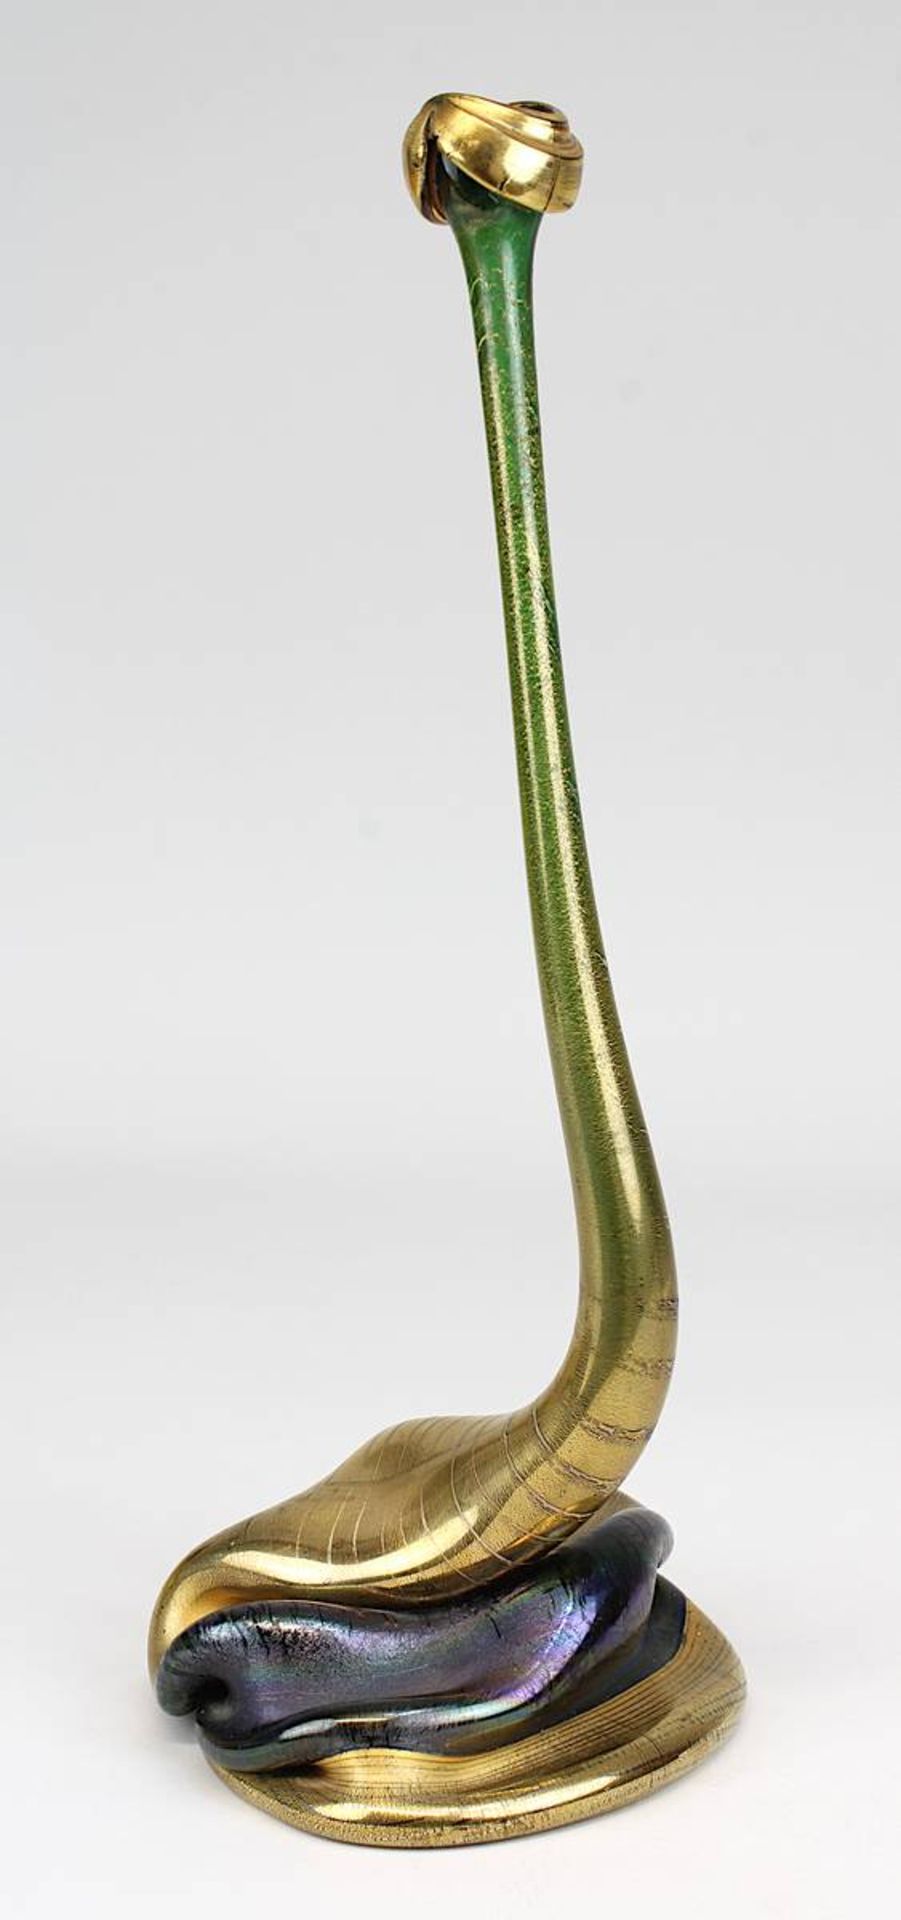 Düsterhaus, Heiner (geb. Paderborn 1949), Vase "Kobra", als Recycling-Objekt aus einer Flasche